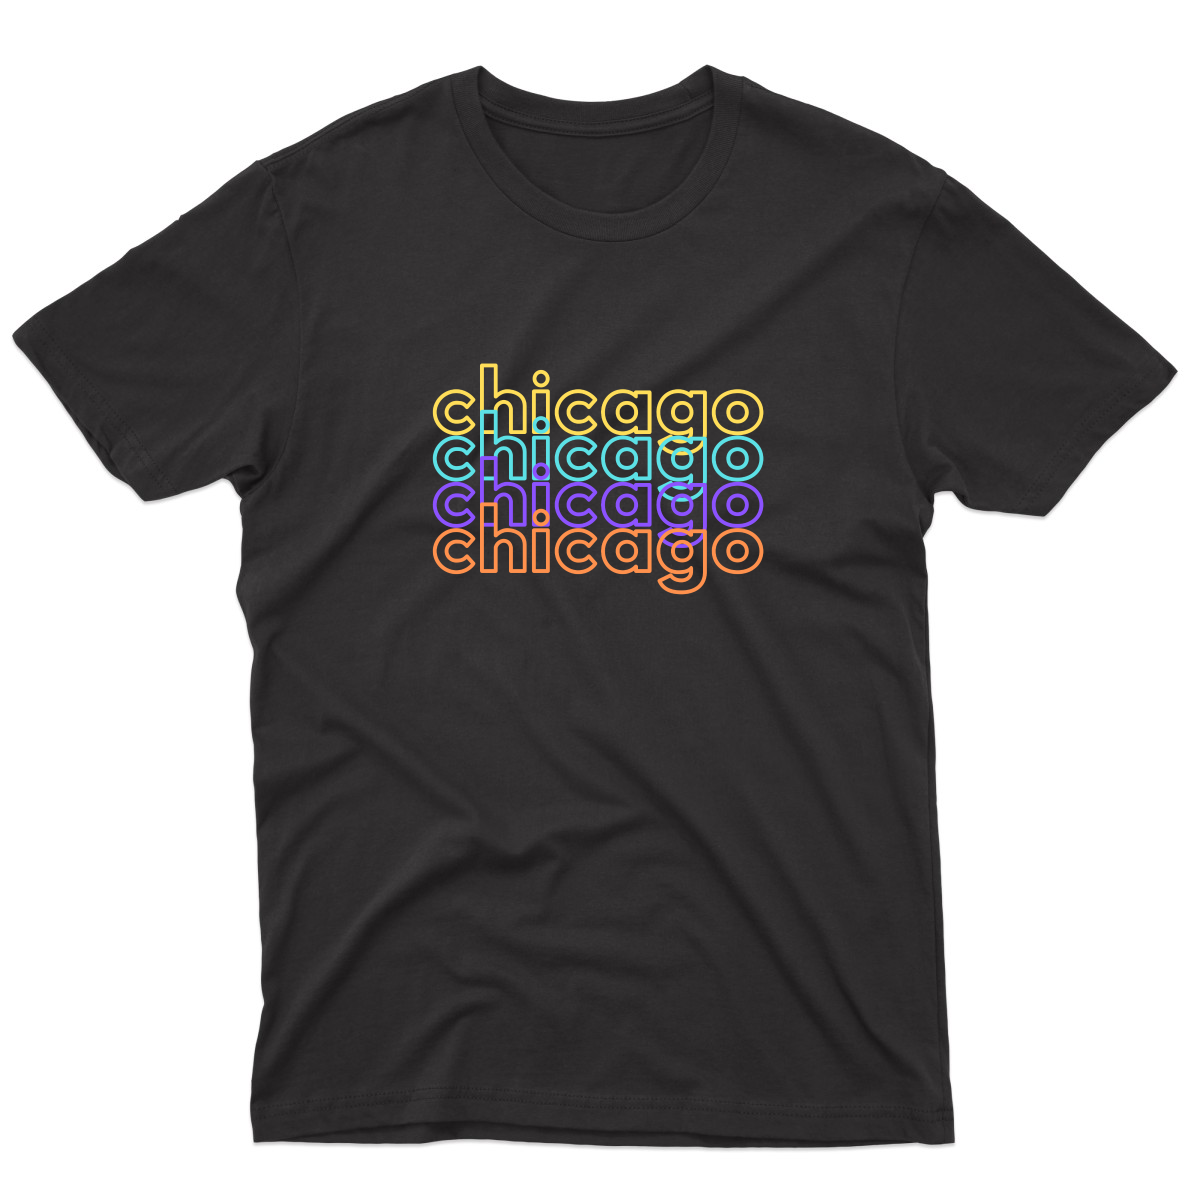 Chicago Men's T-shirt | Black